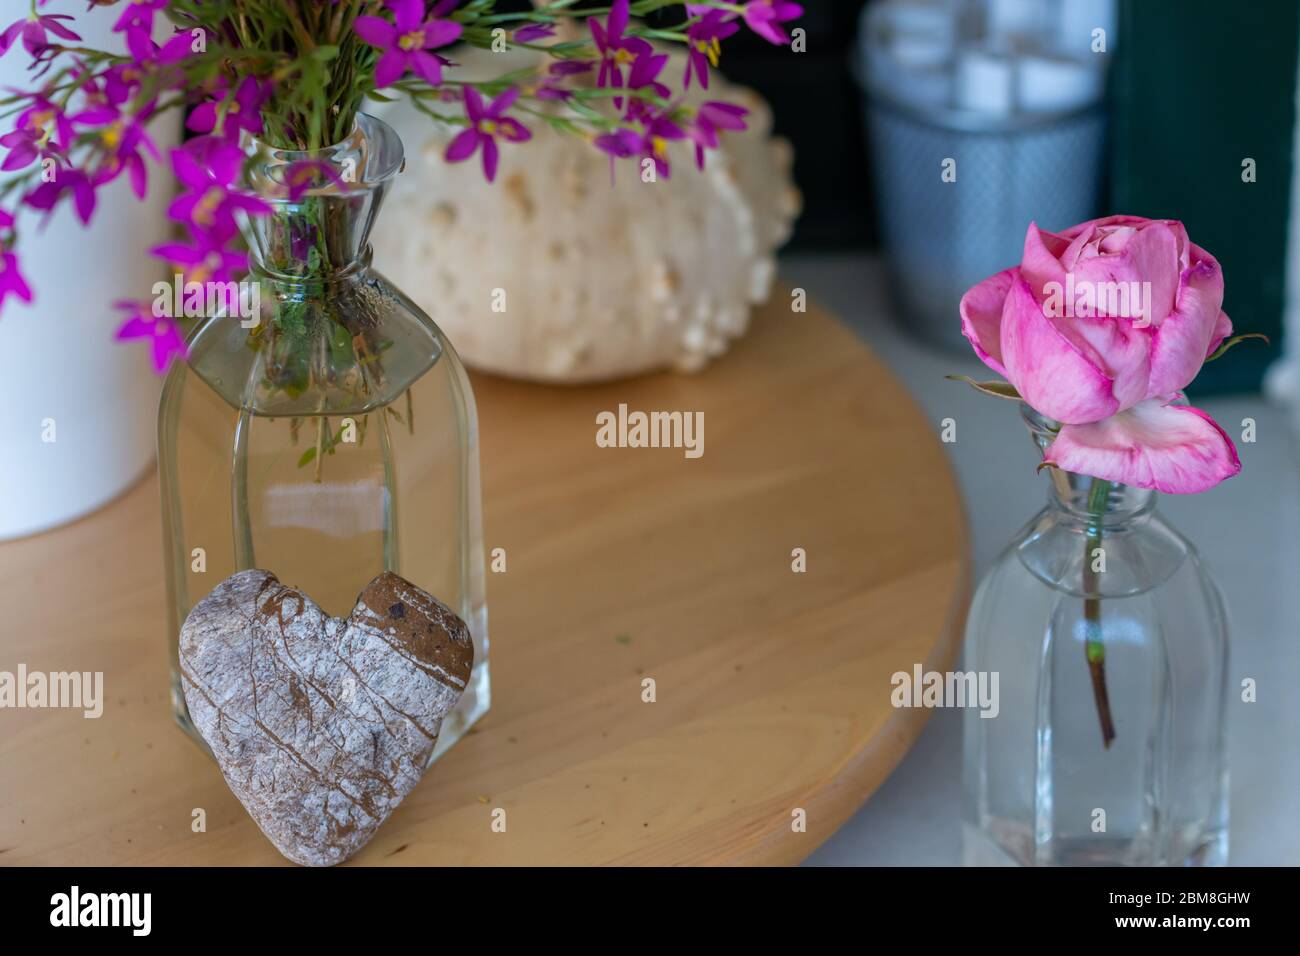 Decorazione interna: angolo casa con rosa, zucca secca, vaso di vetro con fiori selvatici e pietra a forma di cuore Foto Stock